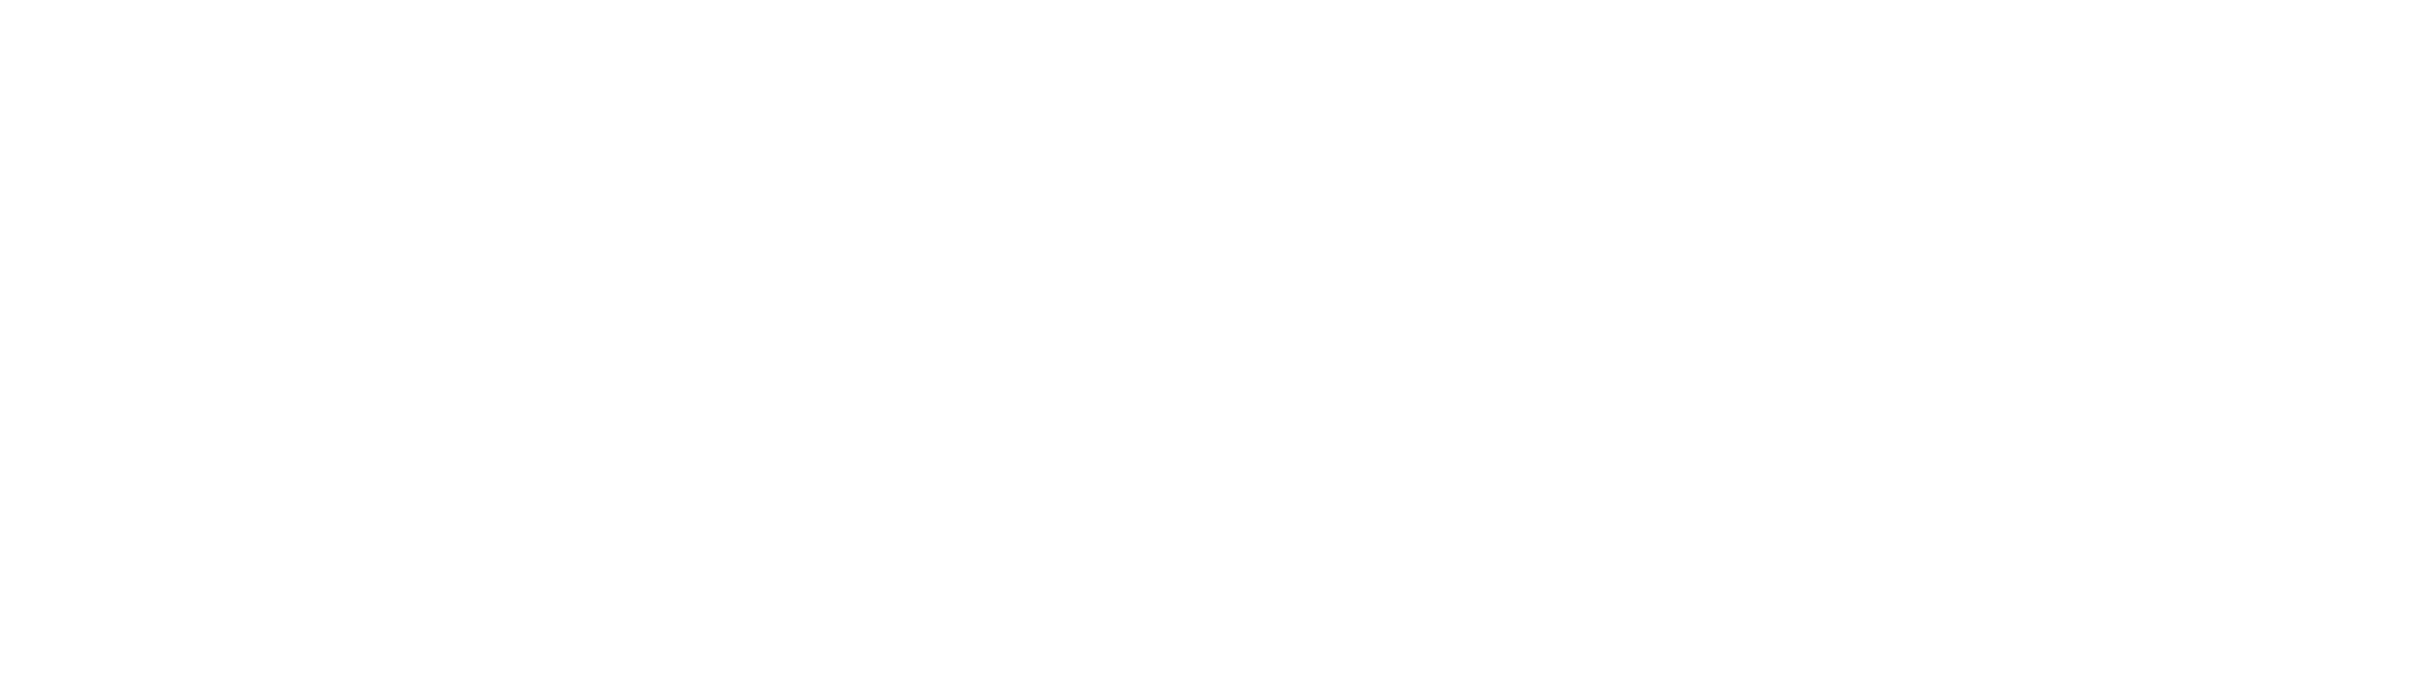 Purpose Life Sciences